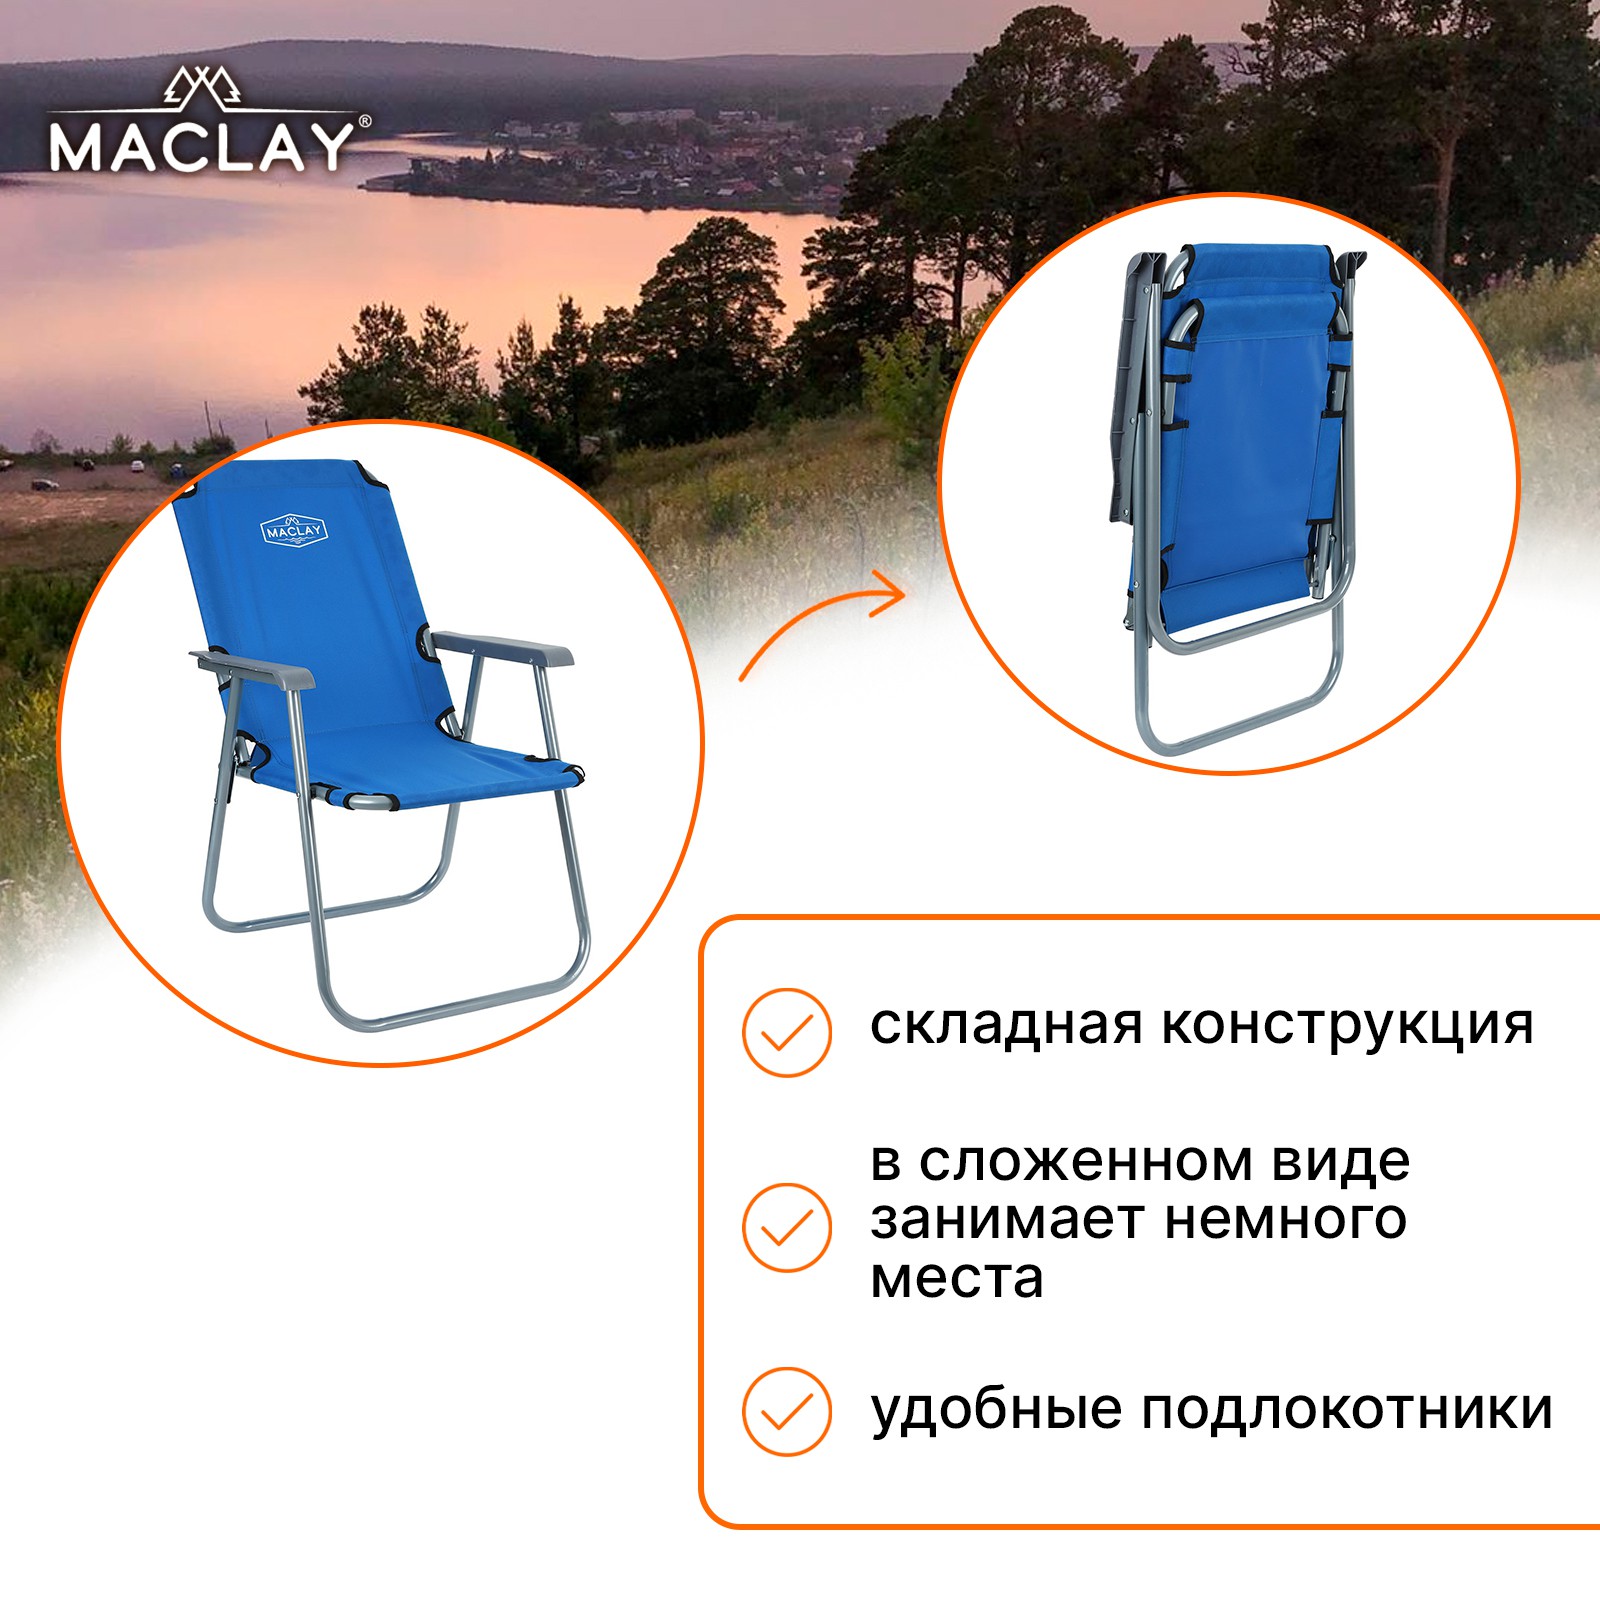 Кресло Maclay туристическое с подлокотниками р. 55 х 46 х 84 см до 100 кг цвет синий - фото 2